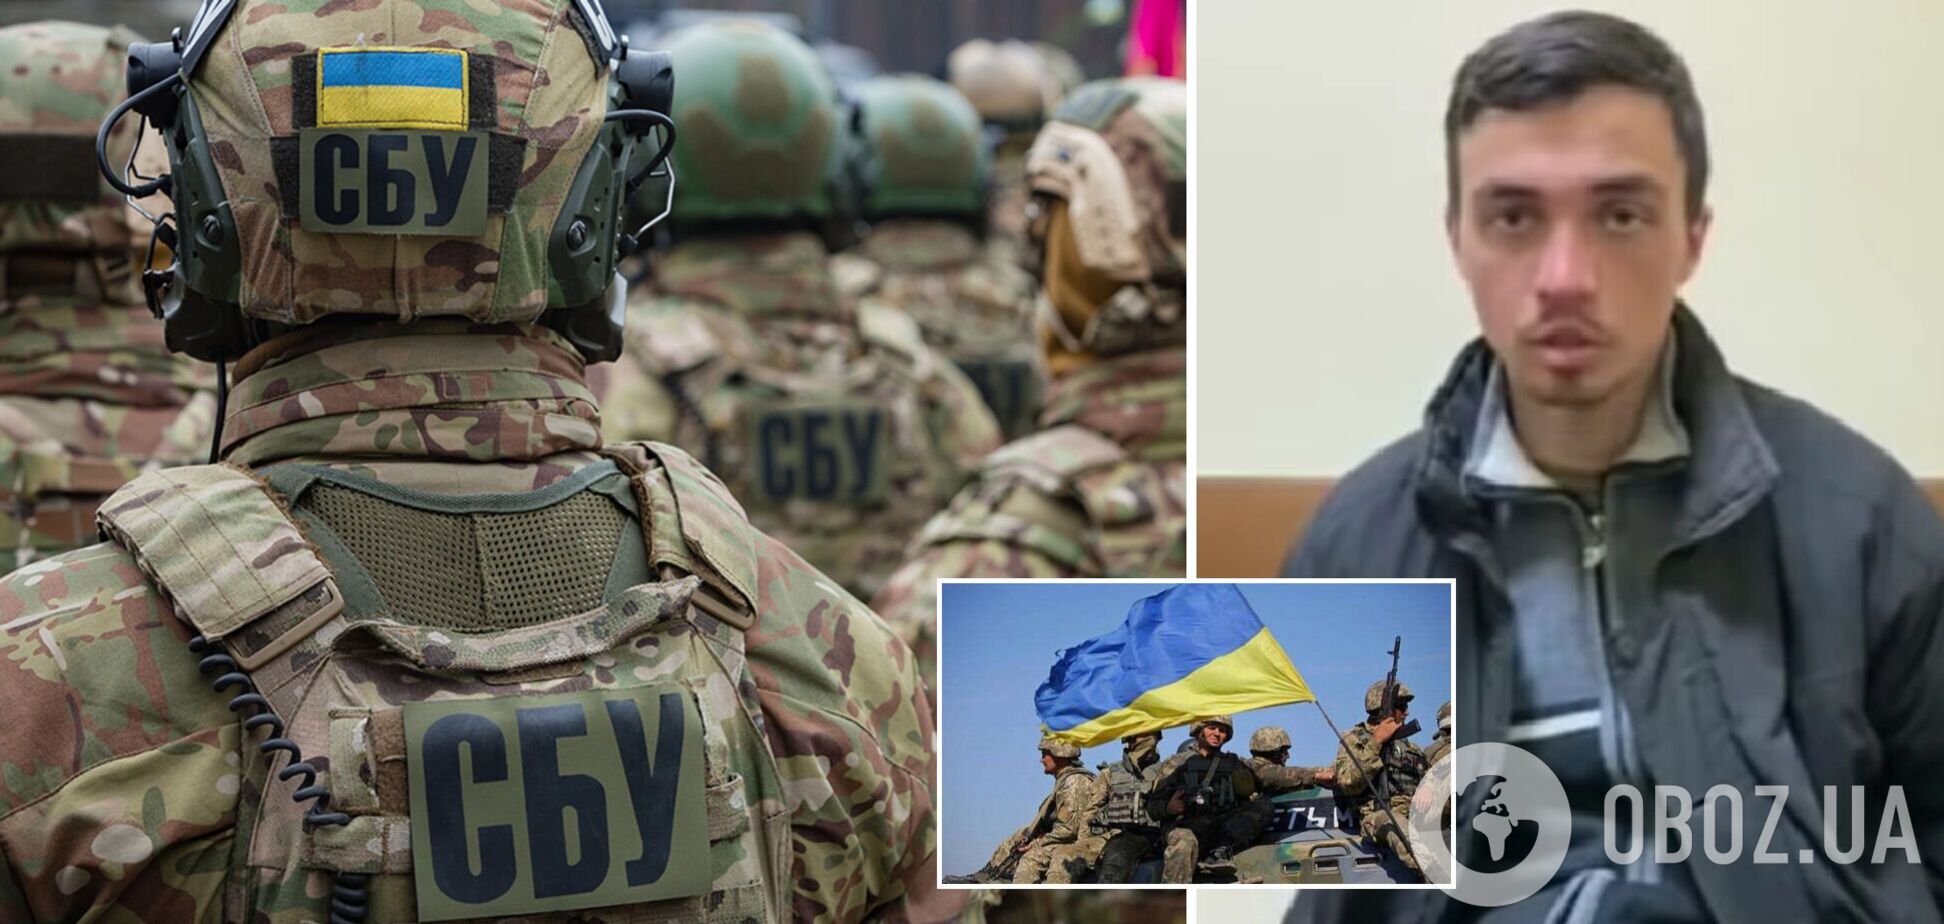 'Это не та война, которая нам нужна': СБУ схватила разведчика РФ, который направлялся в Киев, он пытался оправдаться. Видео